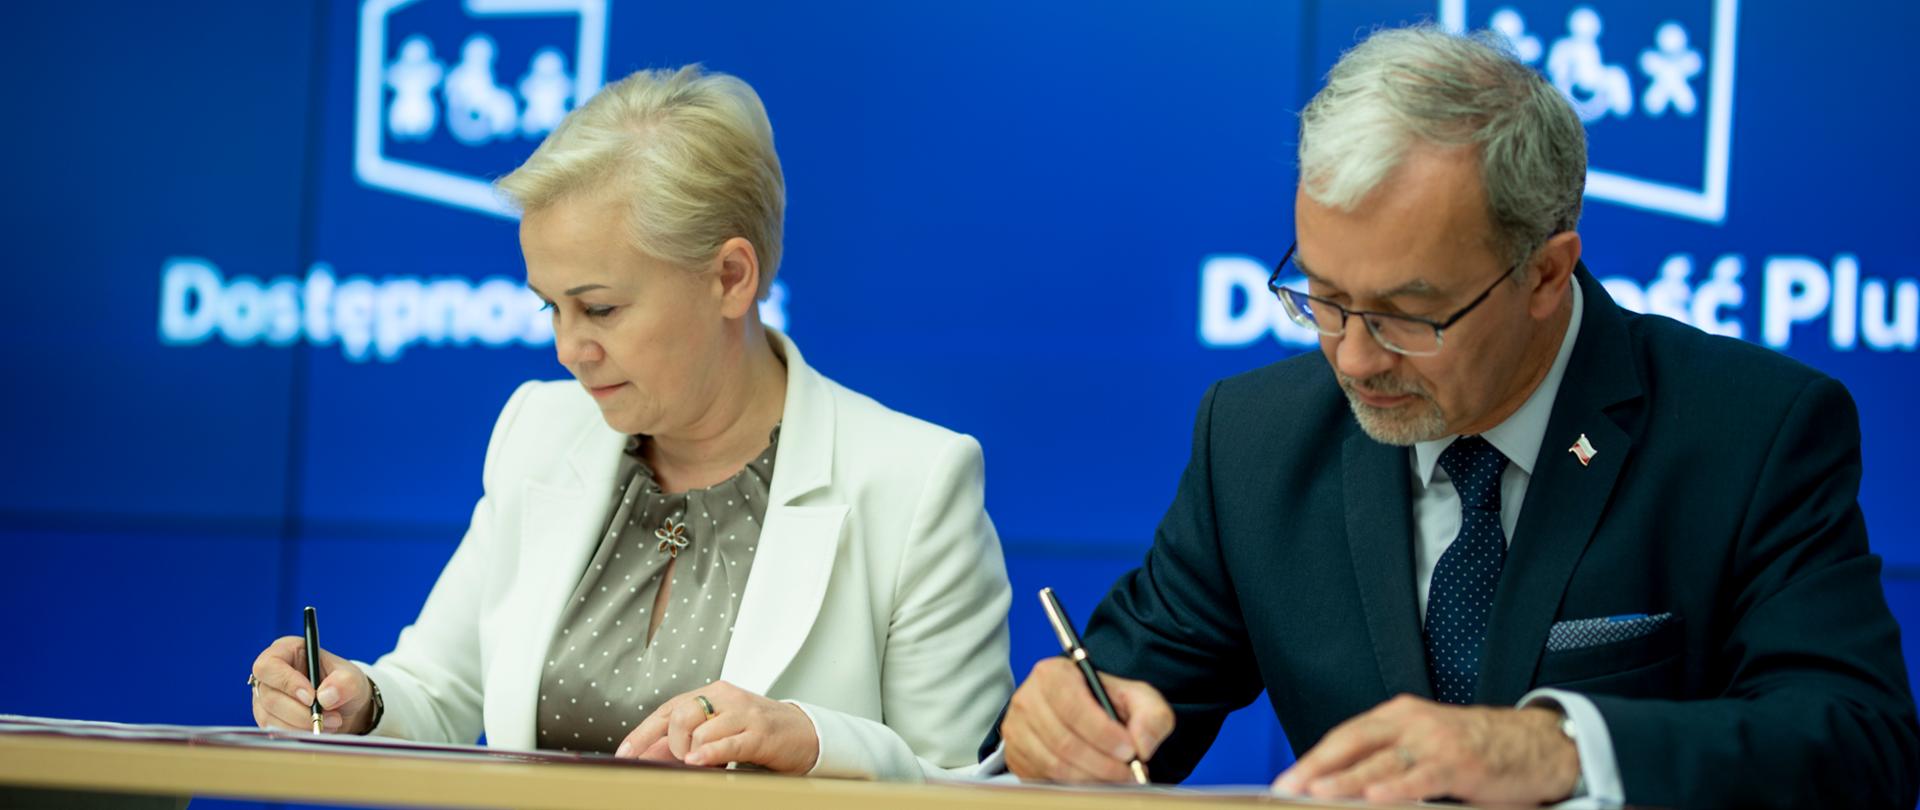 Minister inwestycji i rozwoju Jerzy Kwieciński i prezes zarządu Banku Gospodarstwa Krajowego Beata Daszyńska-Muzyczka podpisują umowę. Za nimi na ekranie logotyp programu Dostępność Plus.